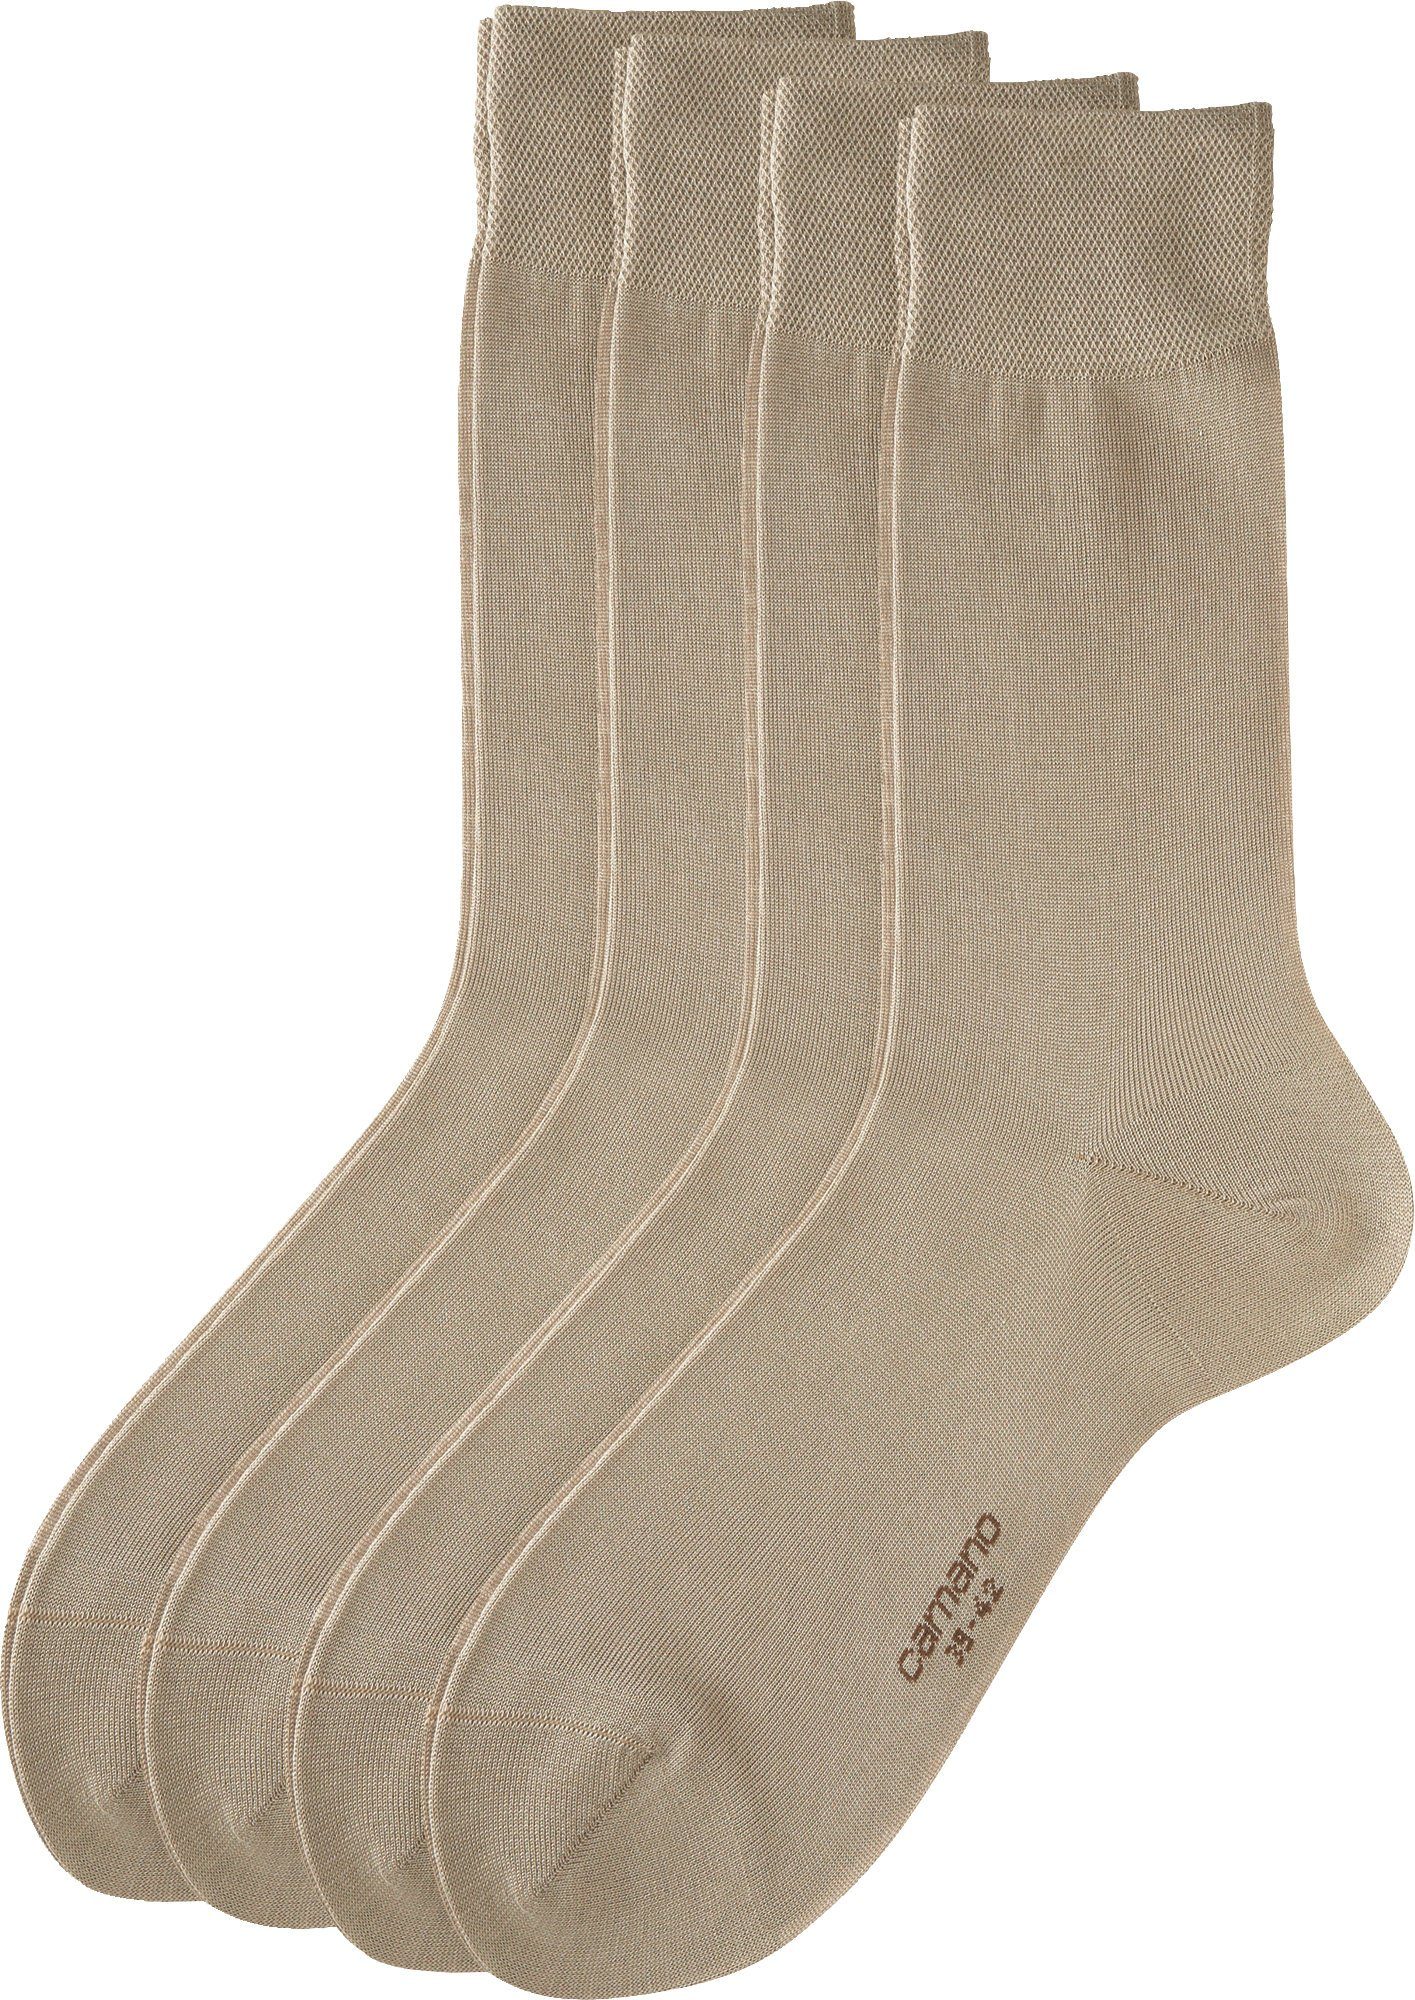 Business-Socken 4 Uni Camano beige Socken Herren Paar